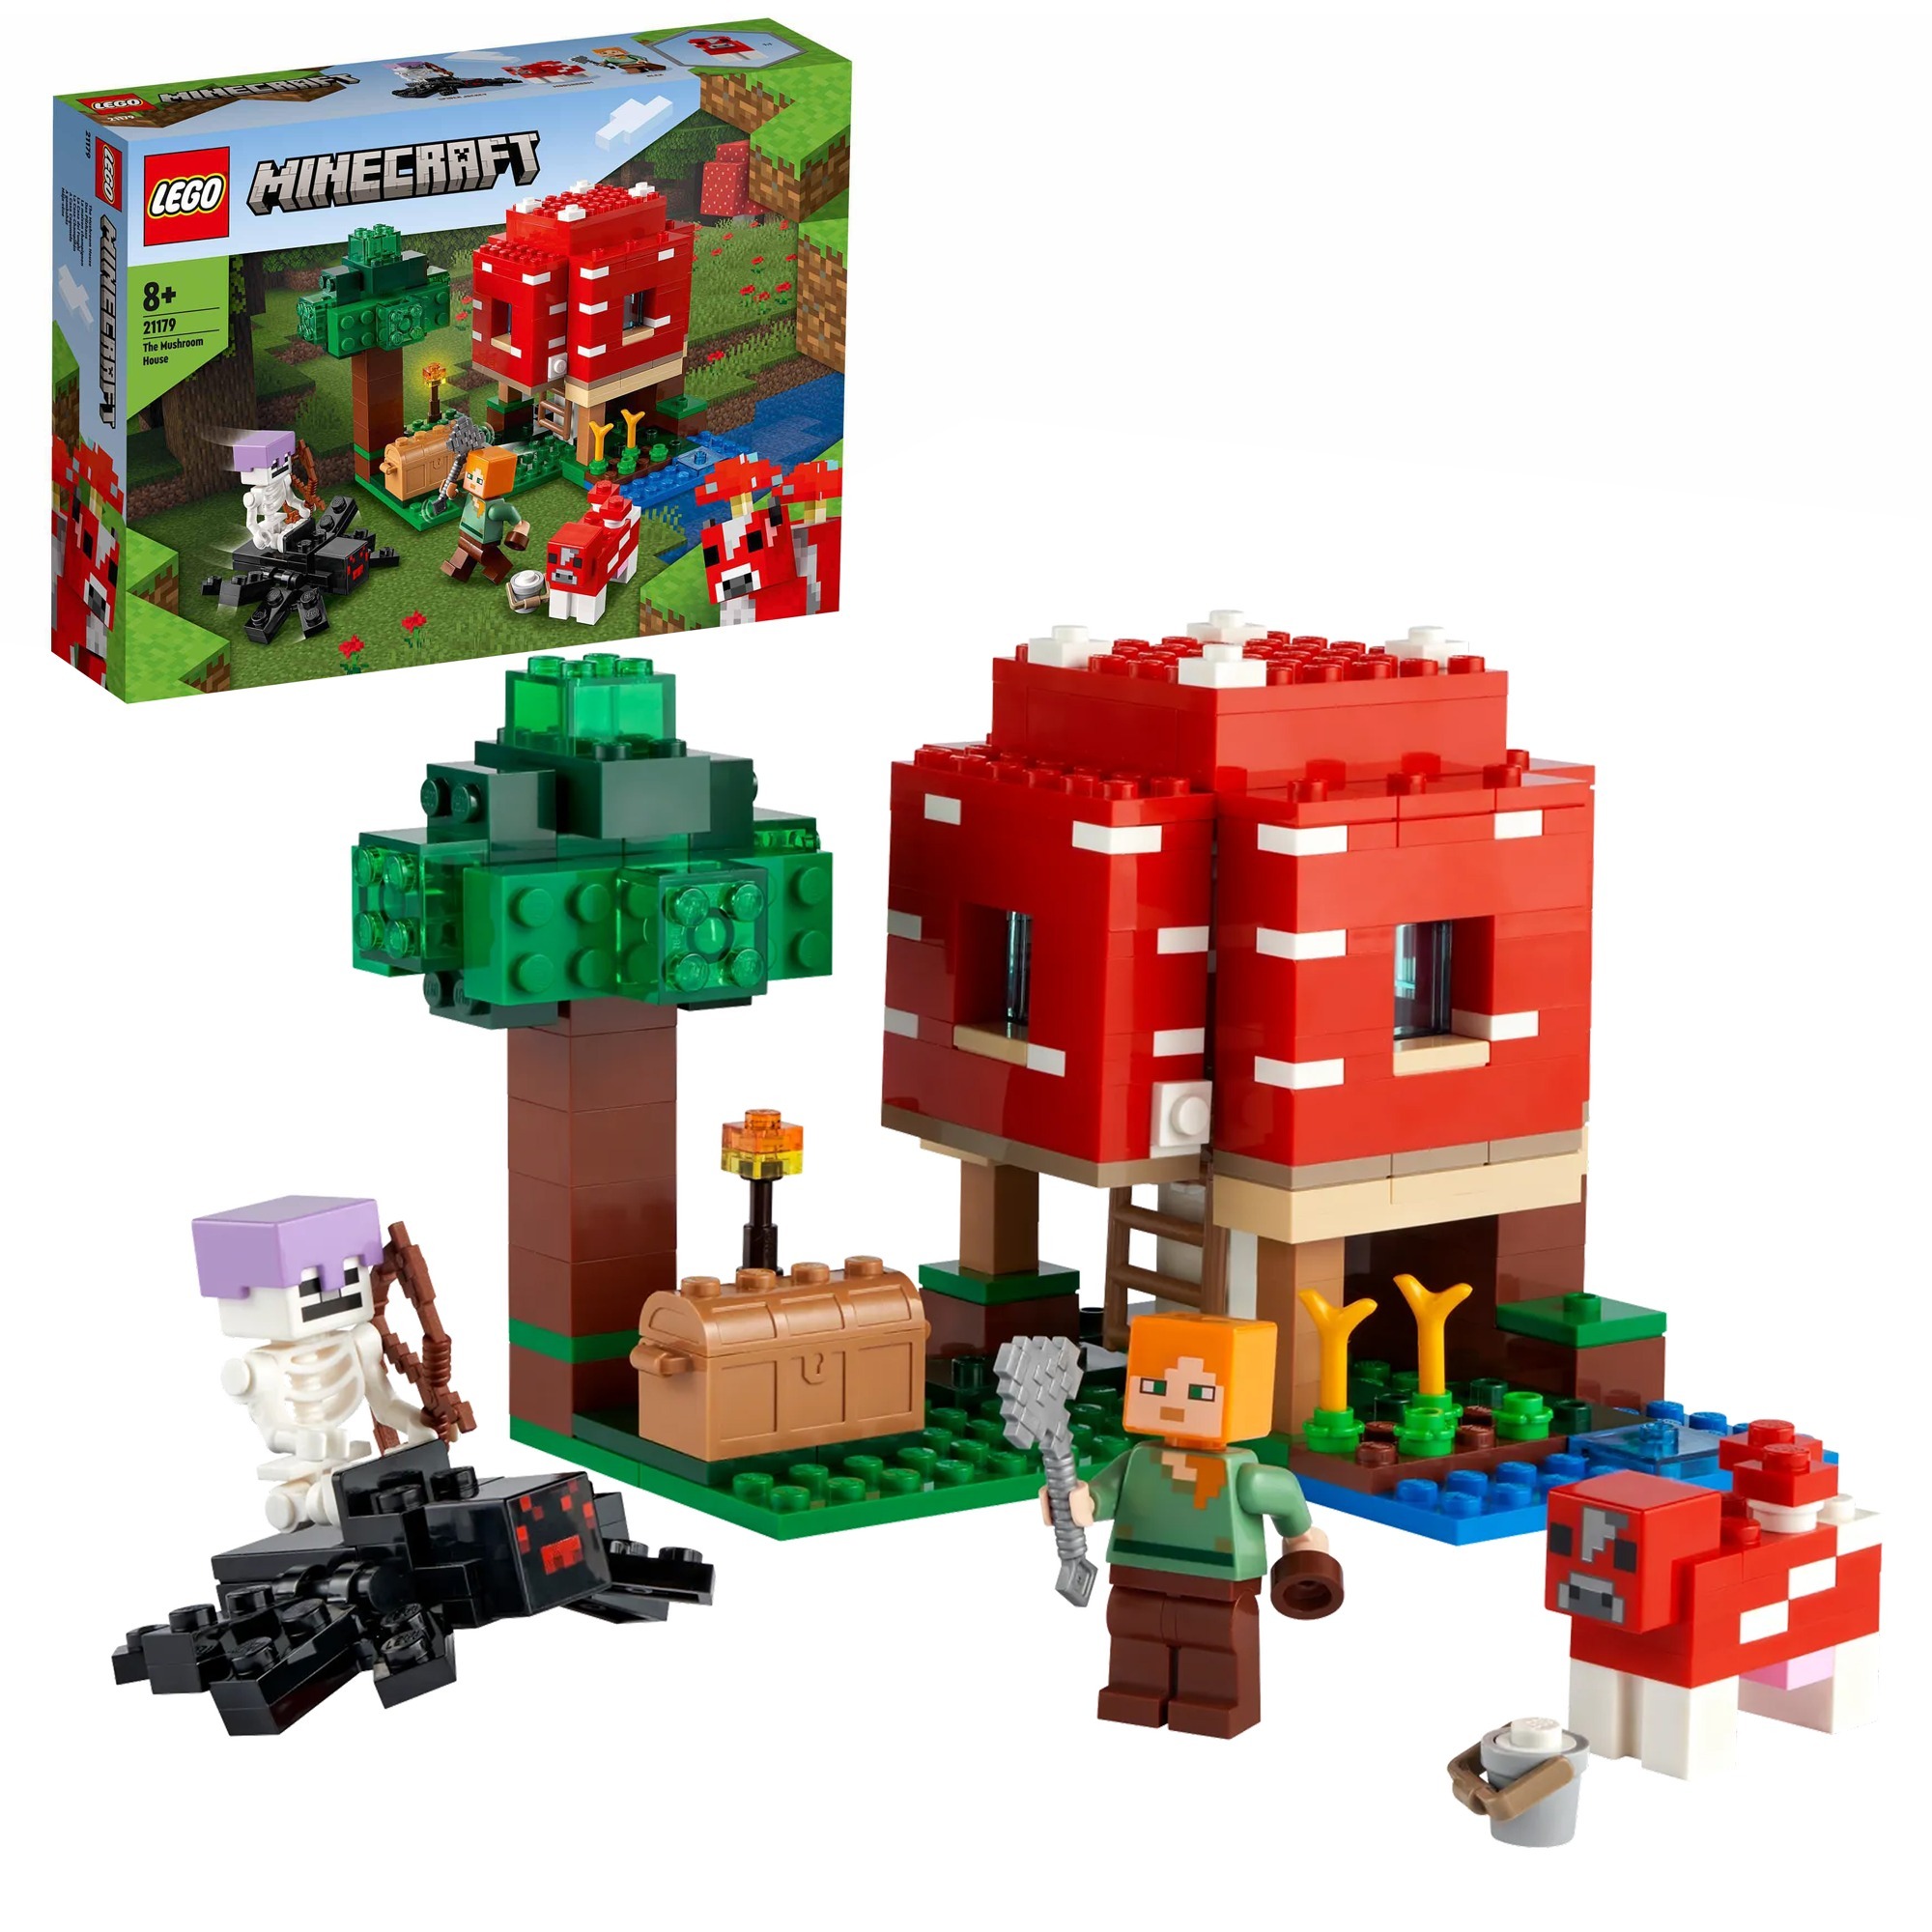 Image of Alternate - 21179 Minecraft Das Pilzhaus, Konstruktionsspielzeug online einkaufen bei Alternate